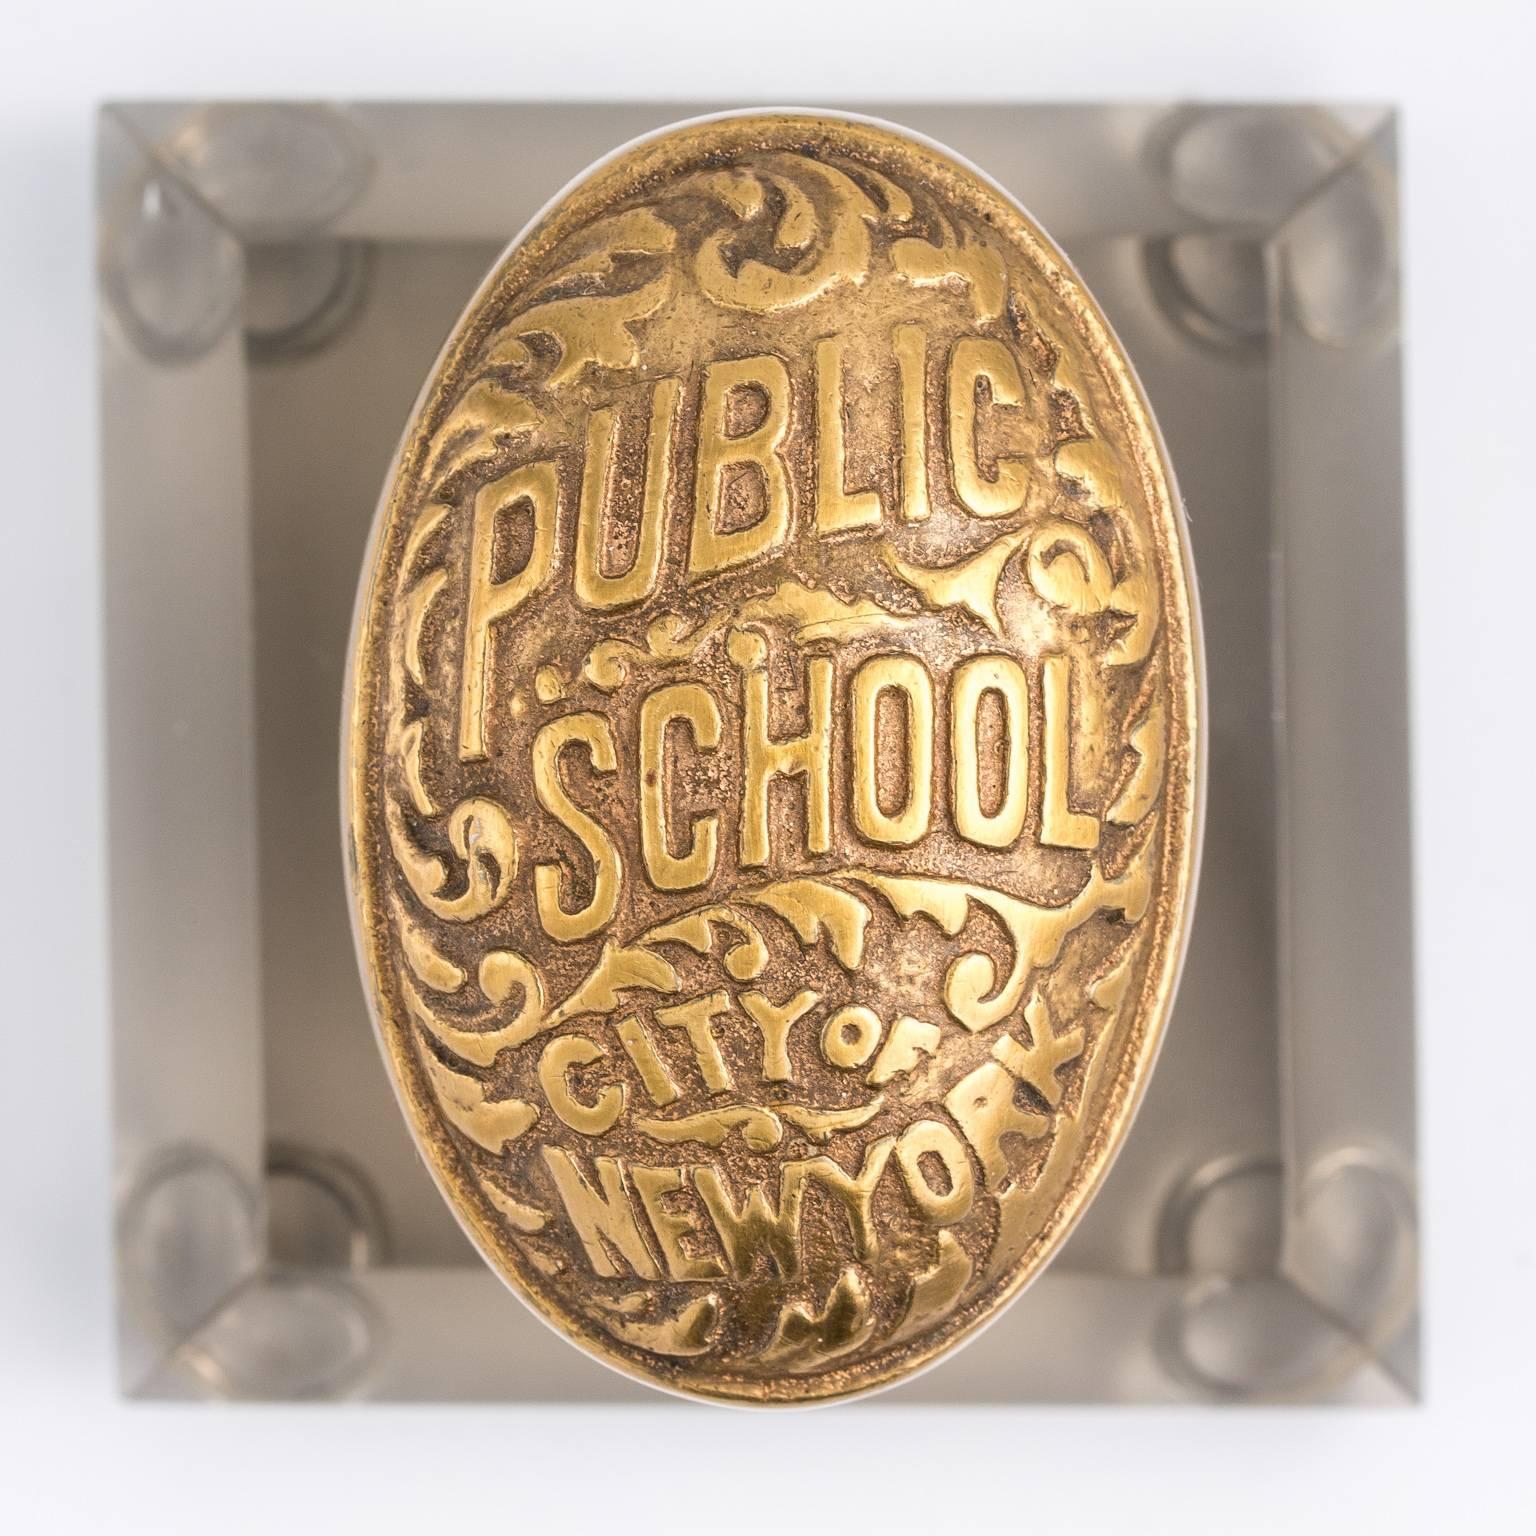 Public School of New York Door Knob 2